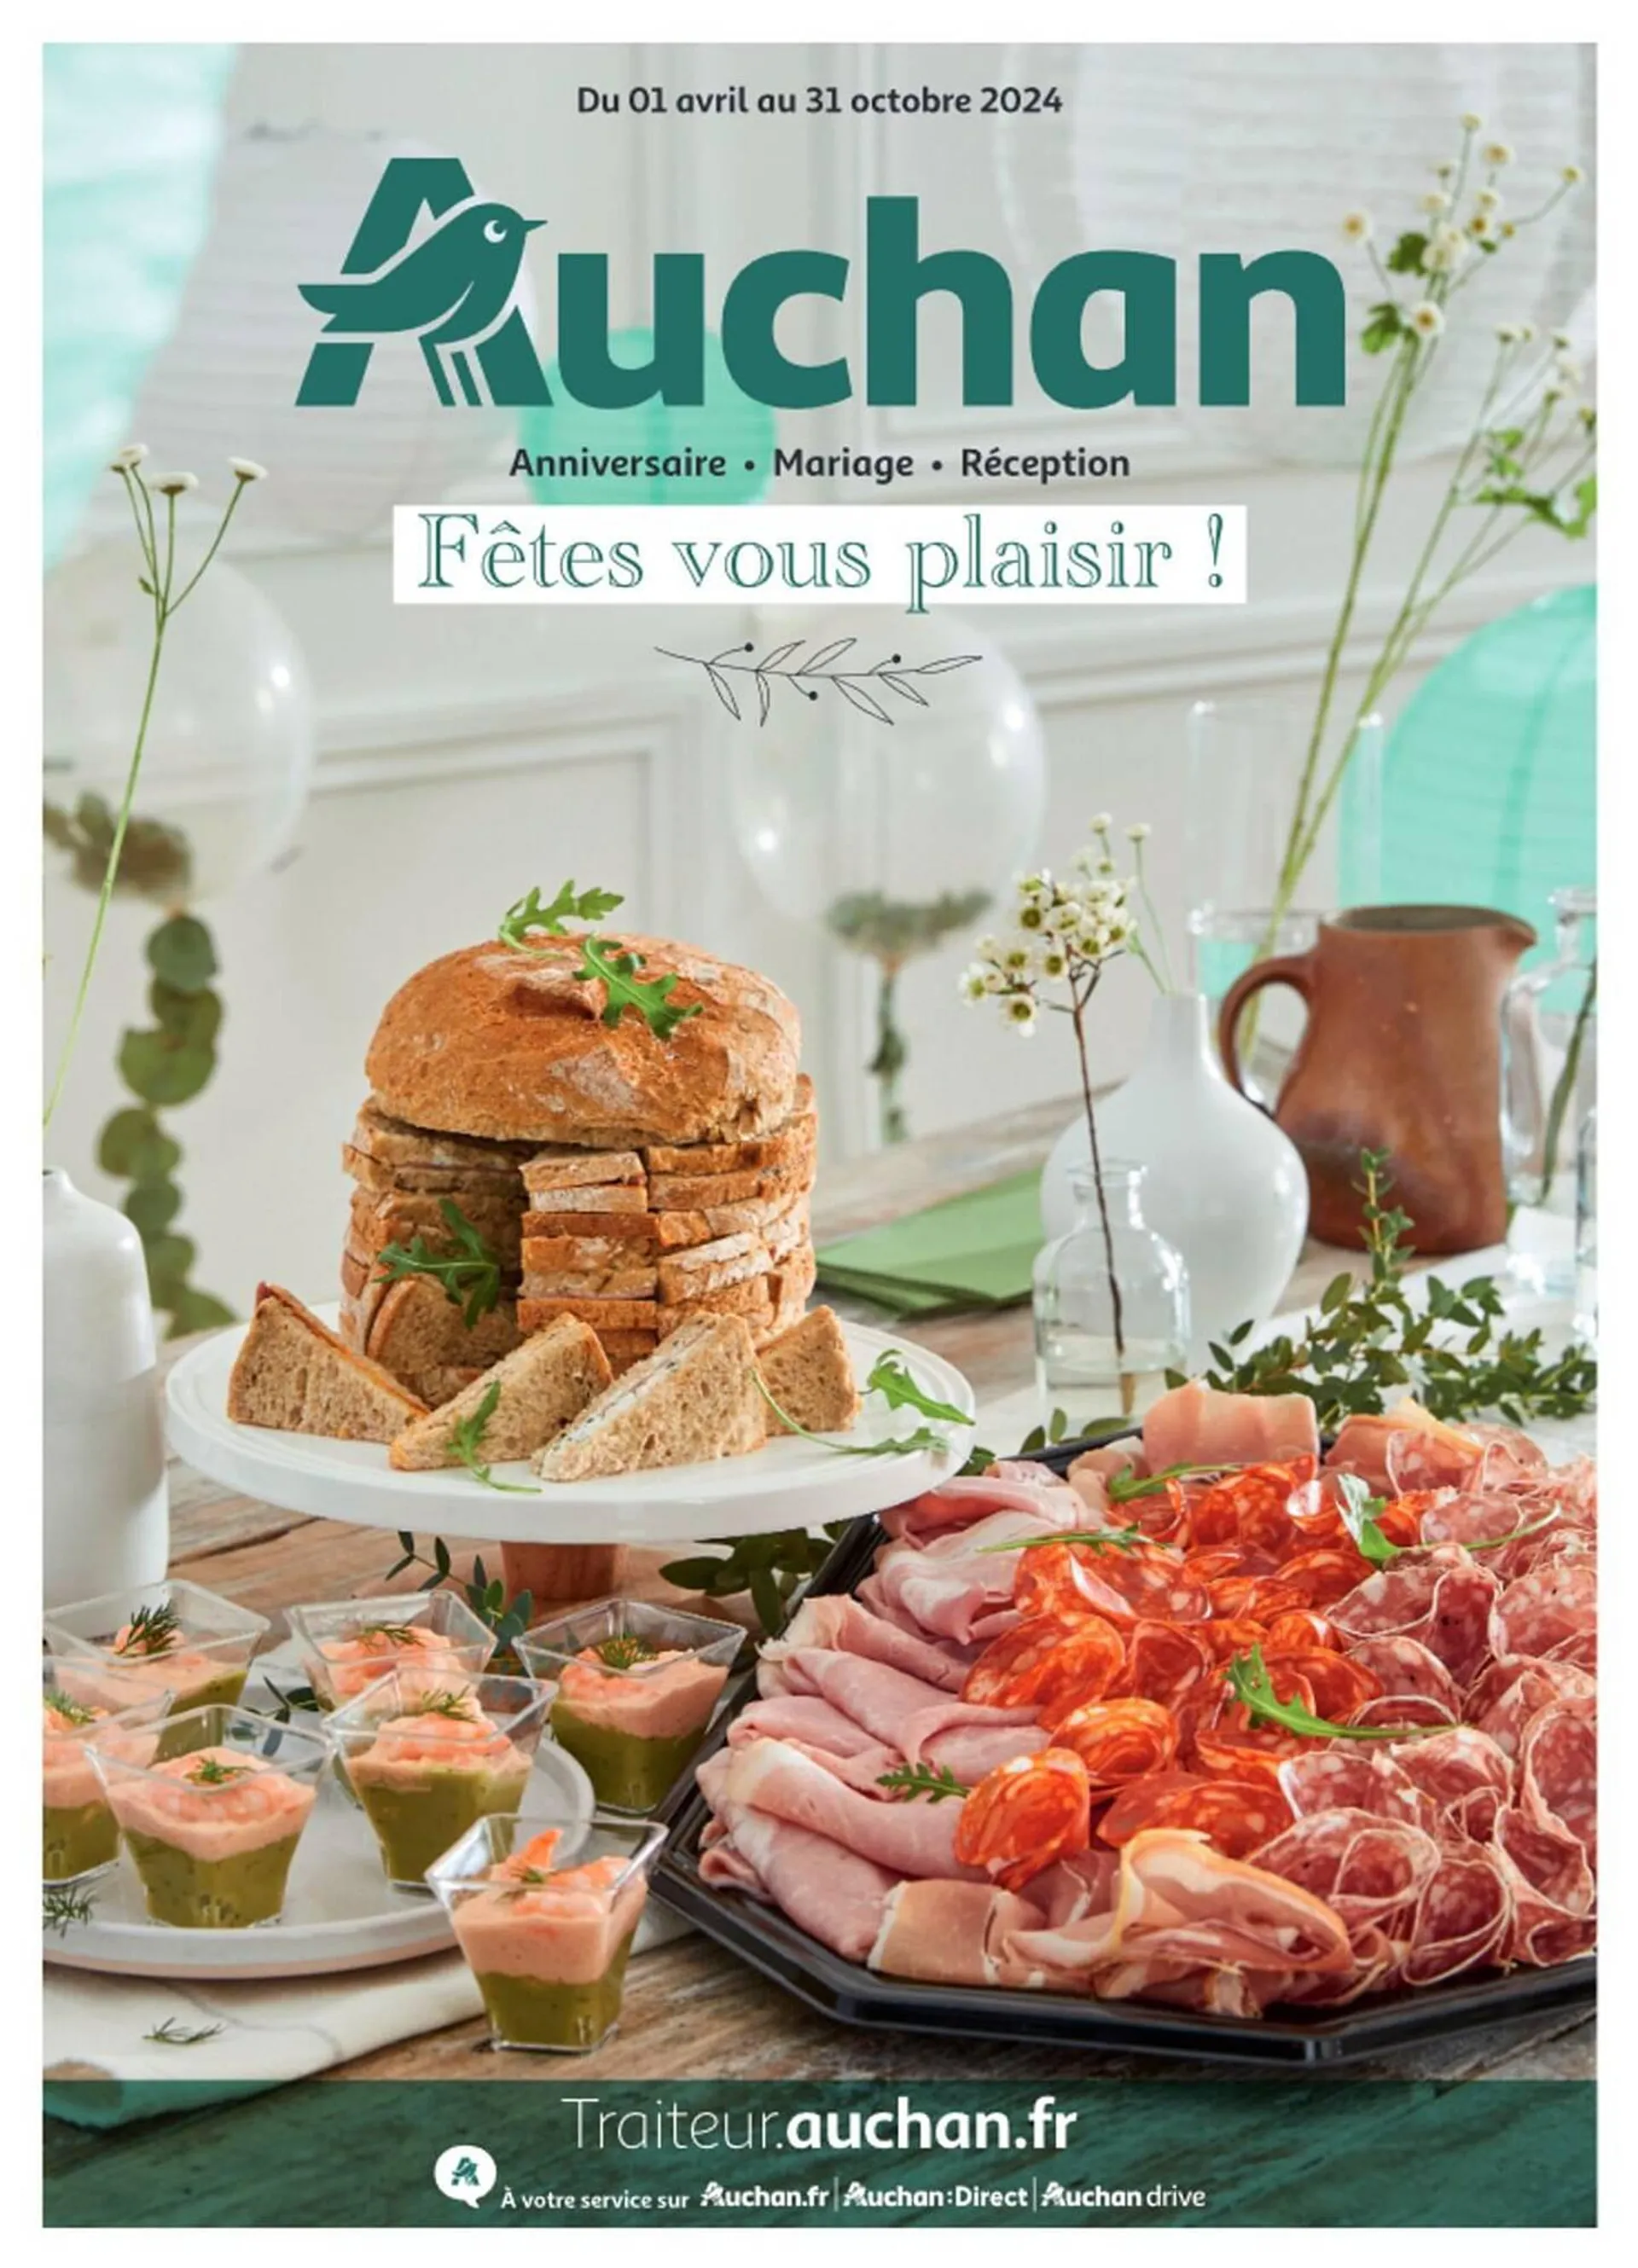 Catalogue Auchan du 1 avril au 1 novembre 2024 - Catalogue page 1